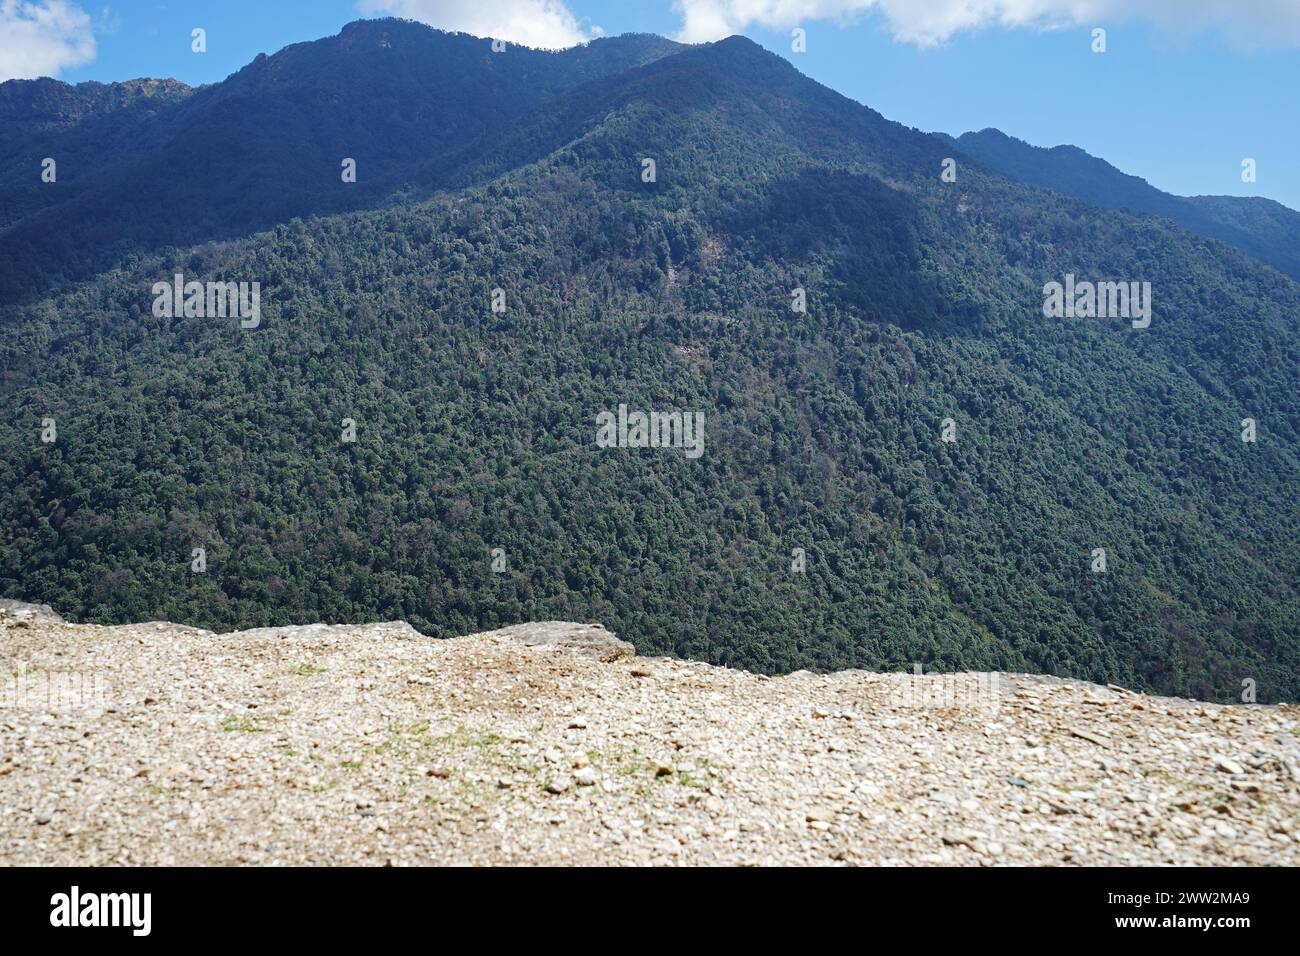 Paysage naturel de vue sur la montagne enneigée et chaîne de collines avec ciel bleu nuageux Banque D'Images